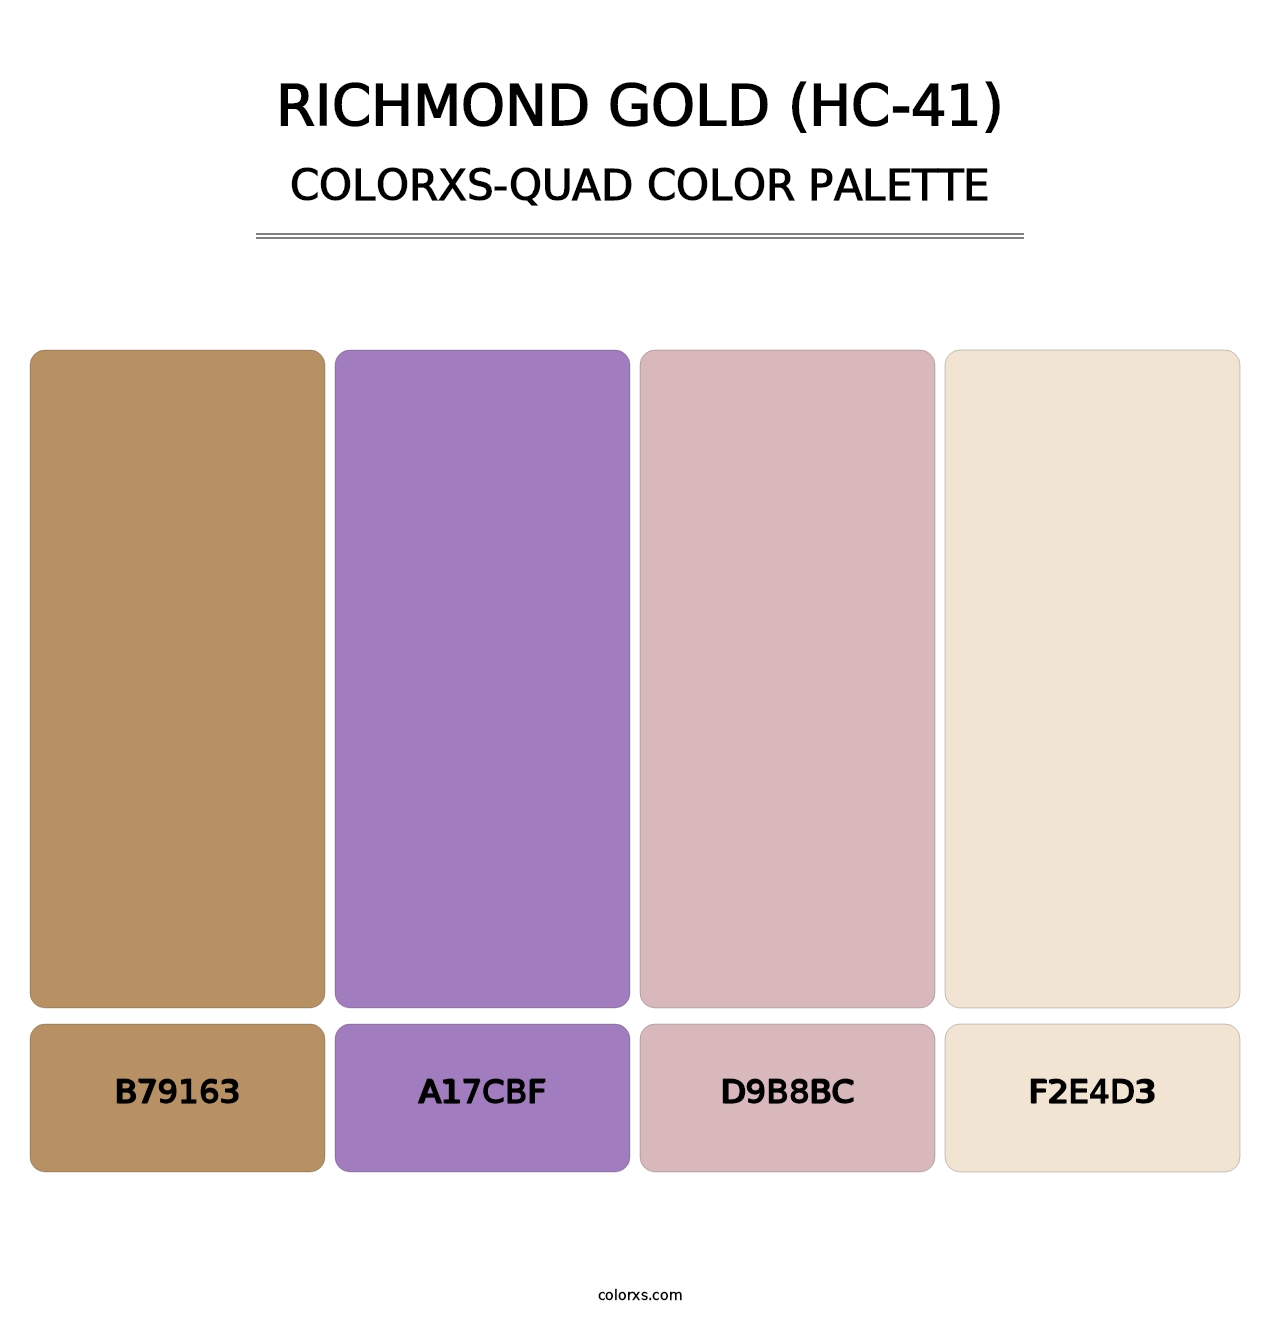 Richmond Gold (HC-41) - Colorxs Quad Palette